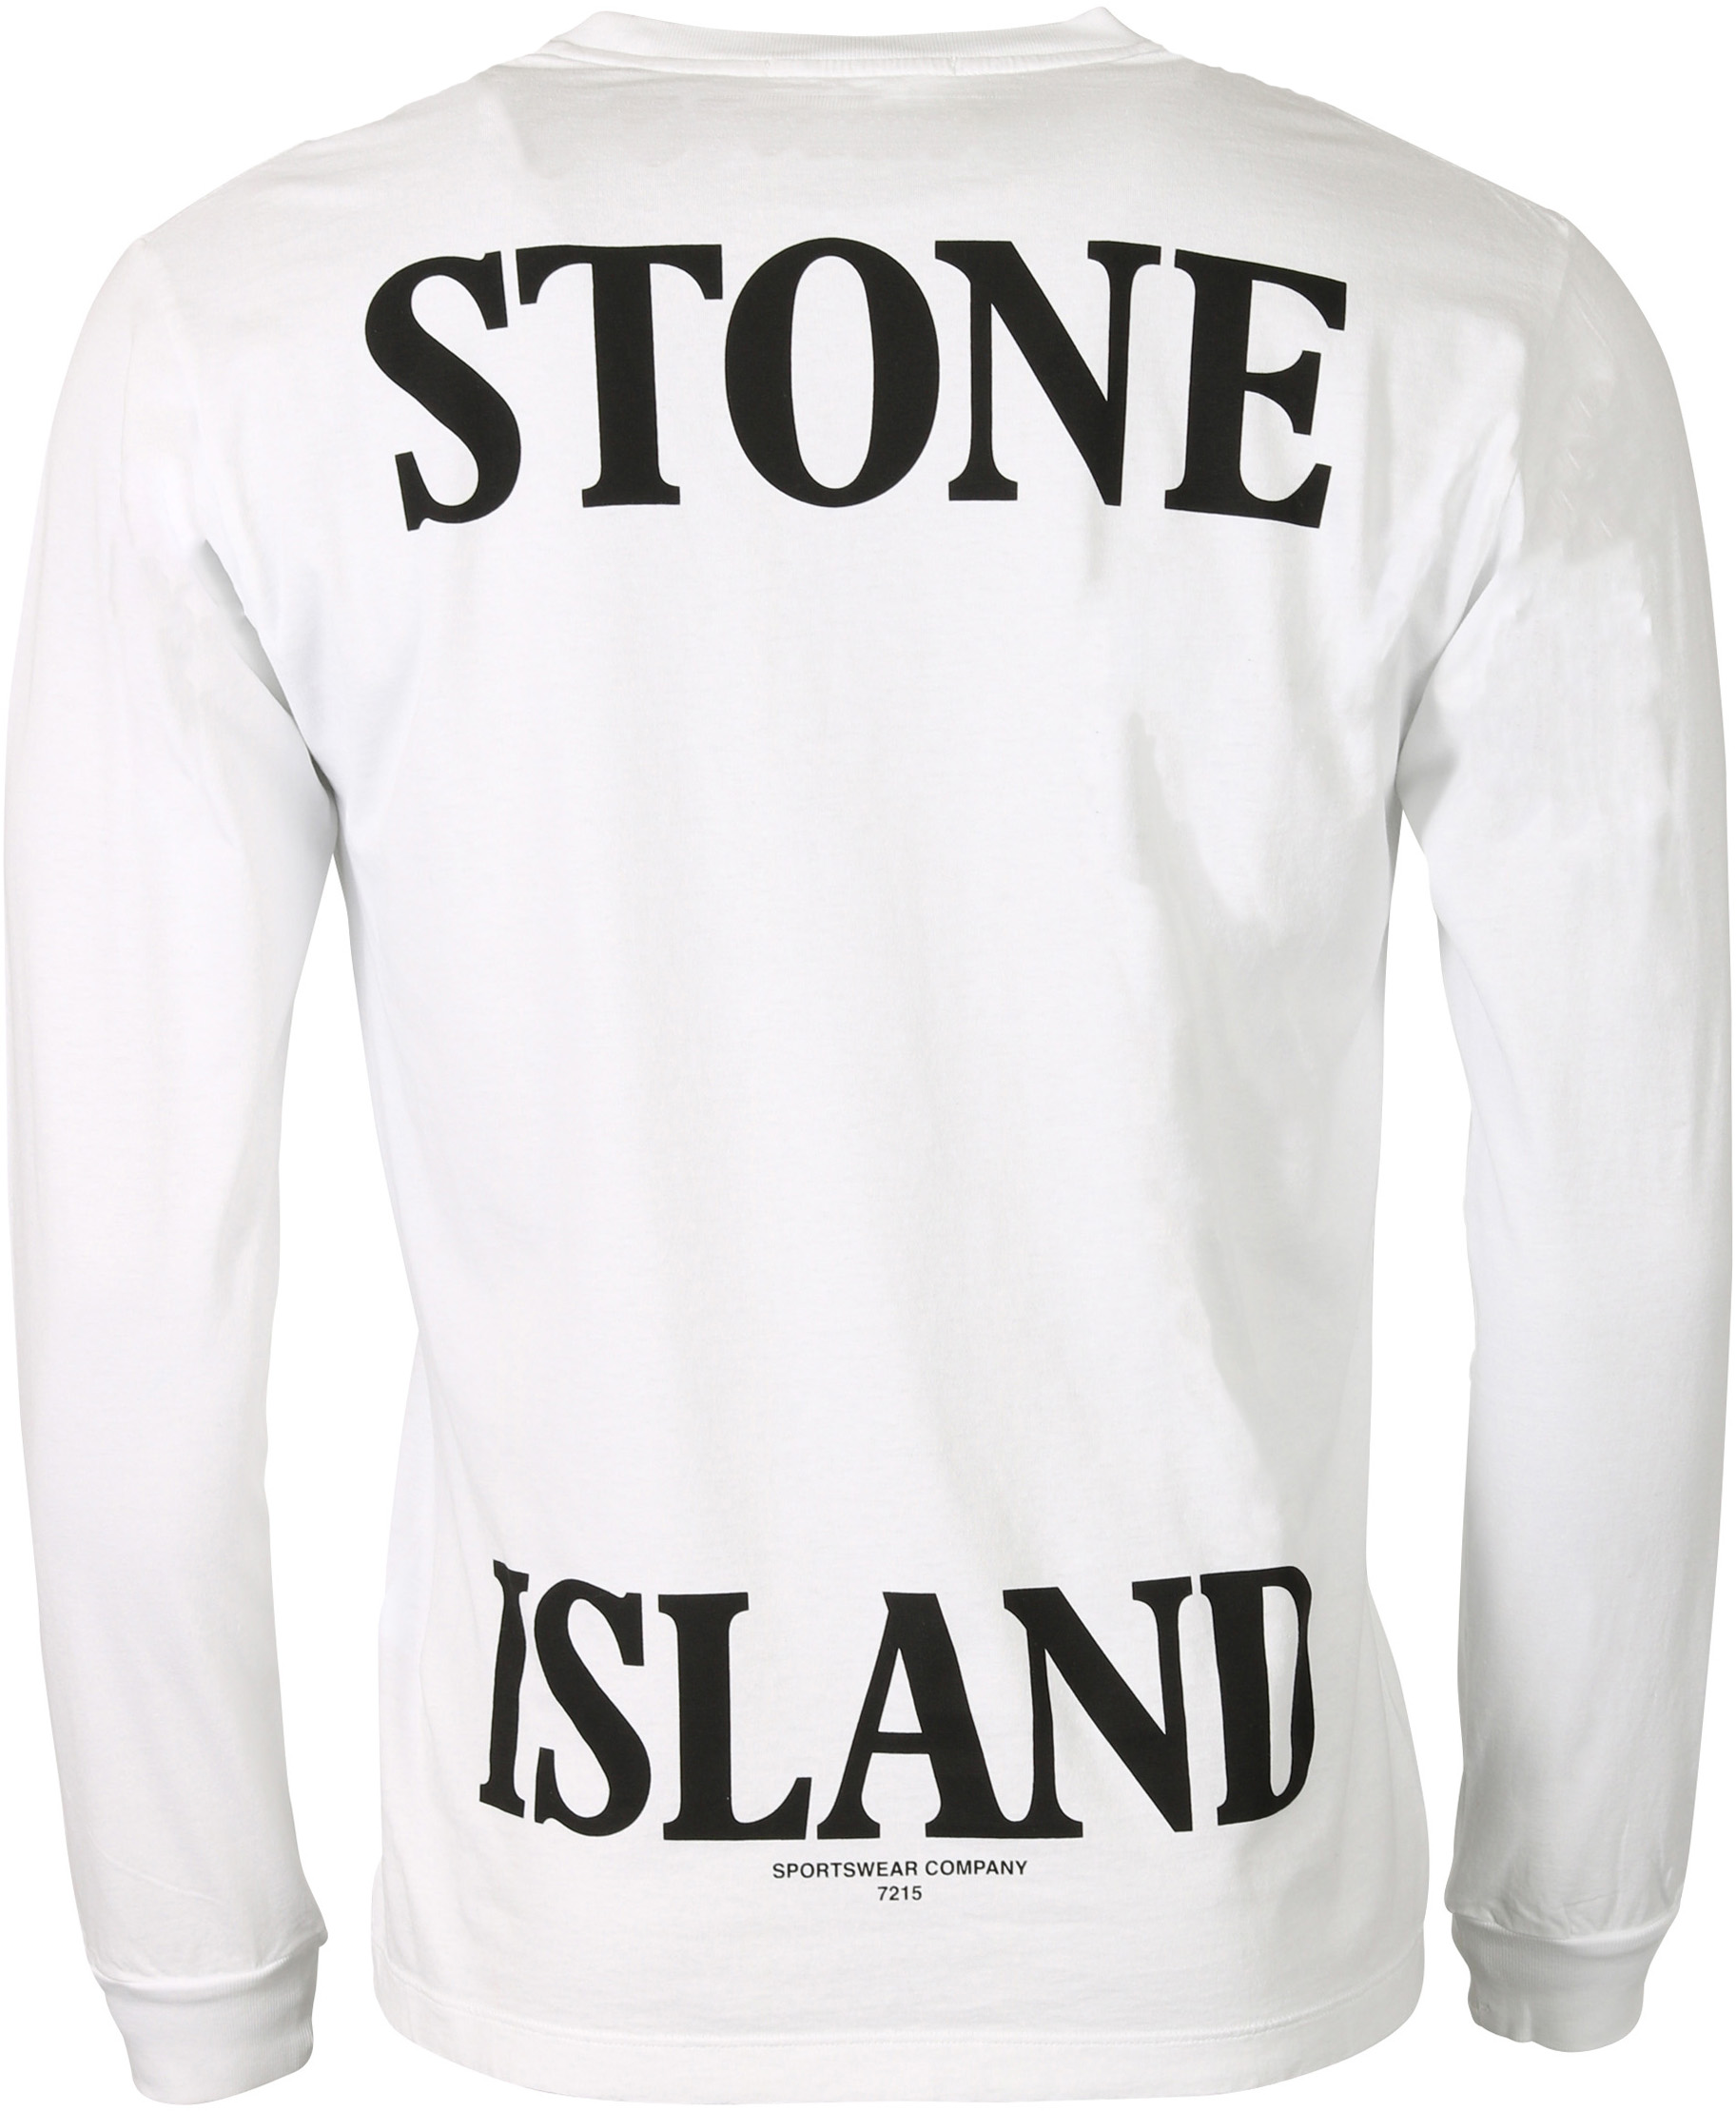 Stone Island Longsleeve White Printed XXL